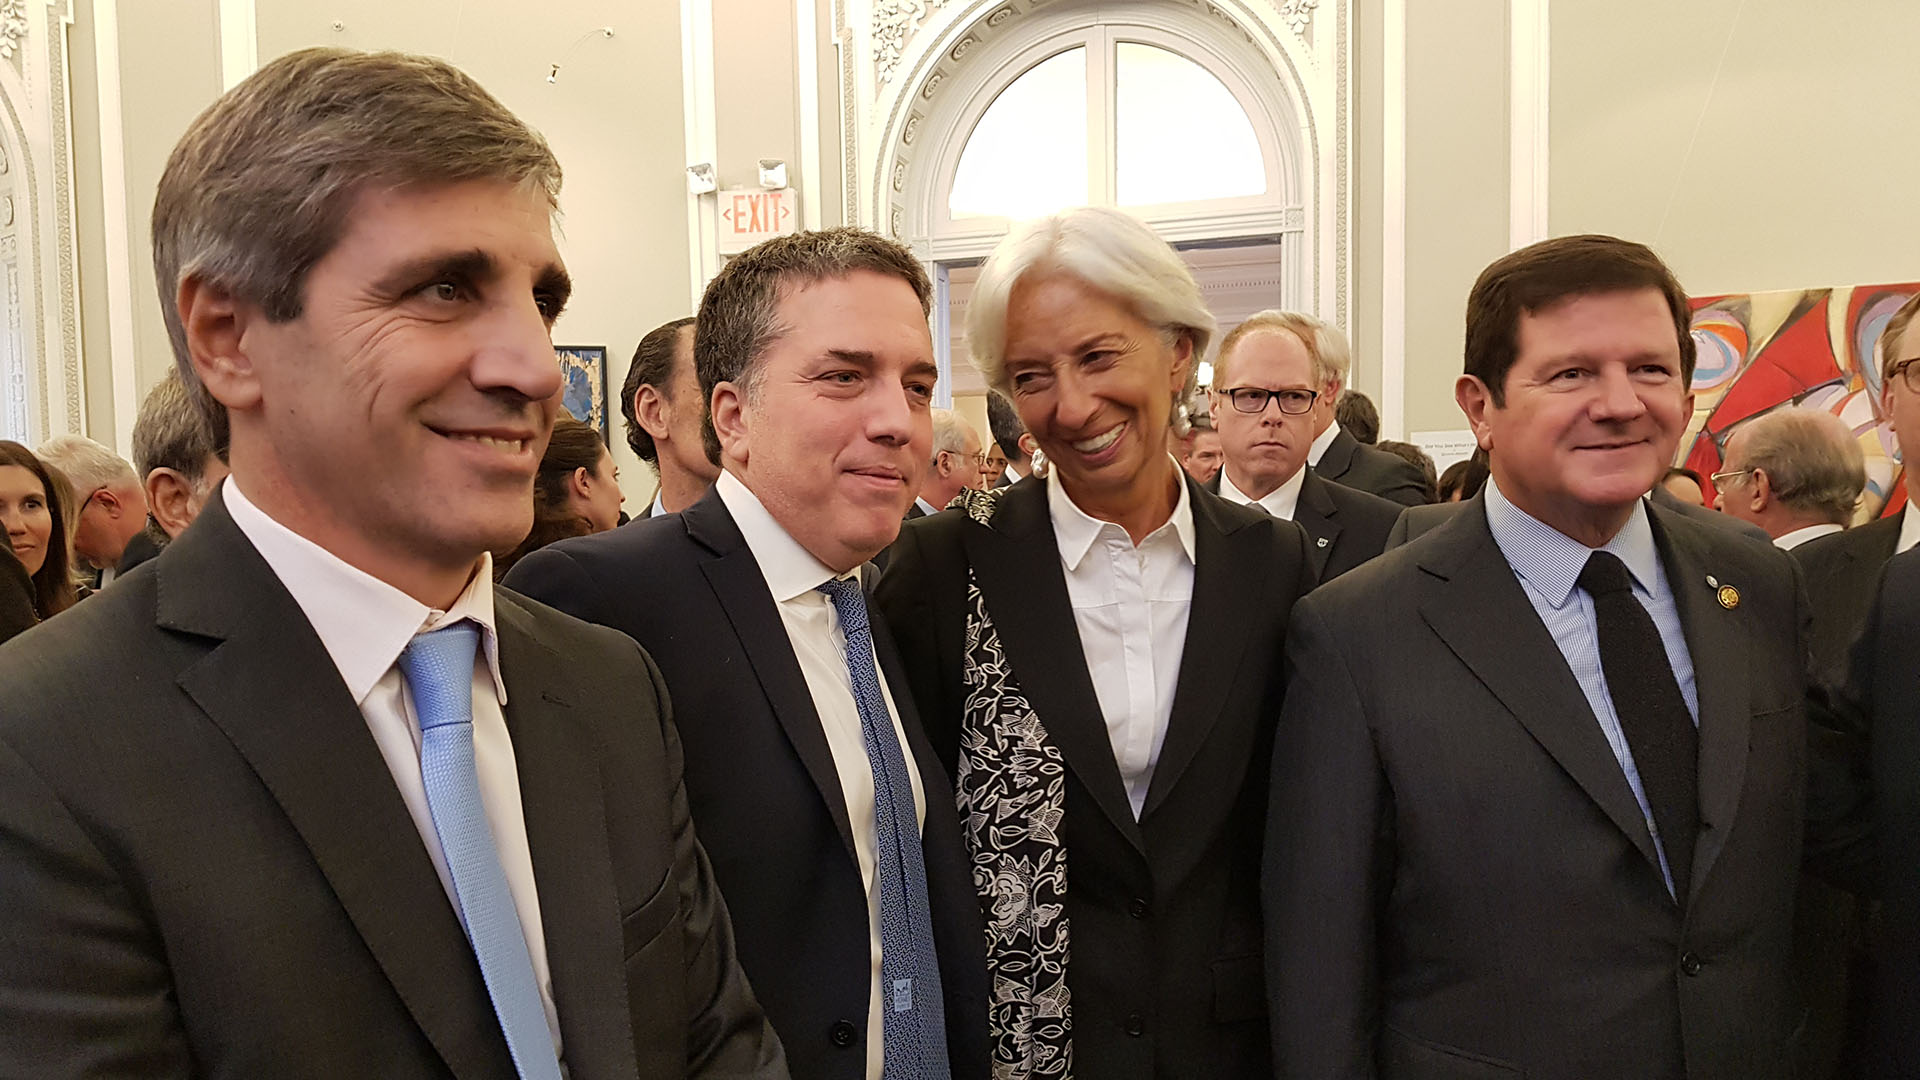 Otros tiempos: "Toto" Caputo, Nicolás Dujovne y Christine Lagarde en la embajada argentina en Washington, en abril de 2018
